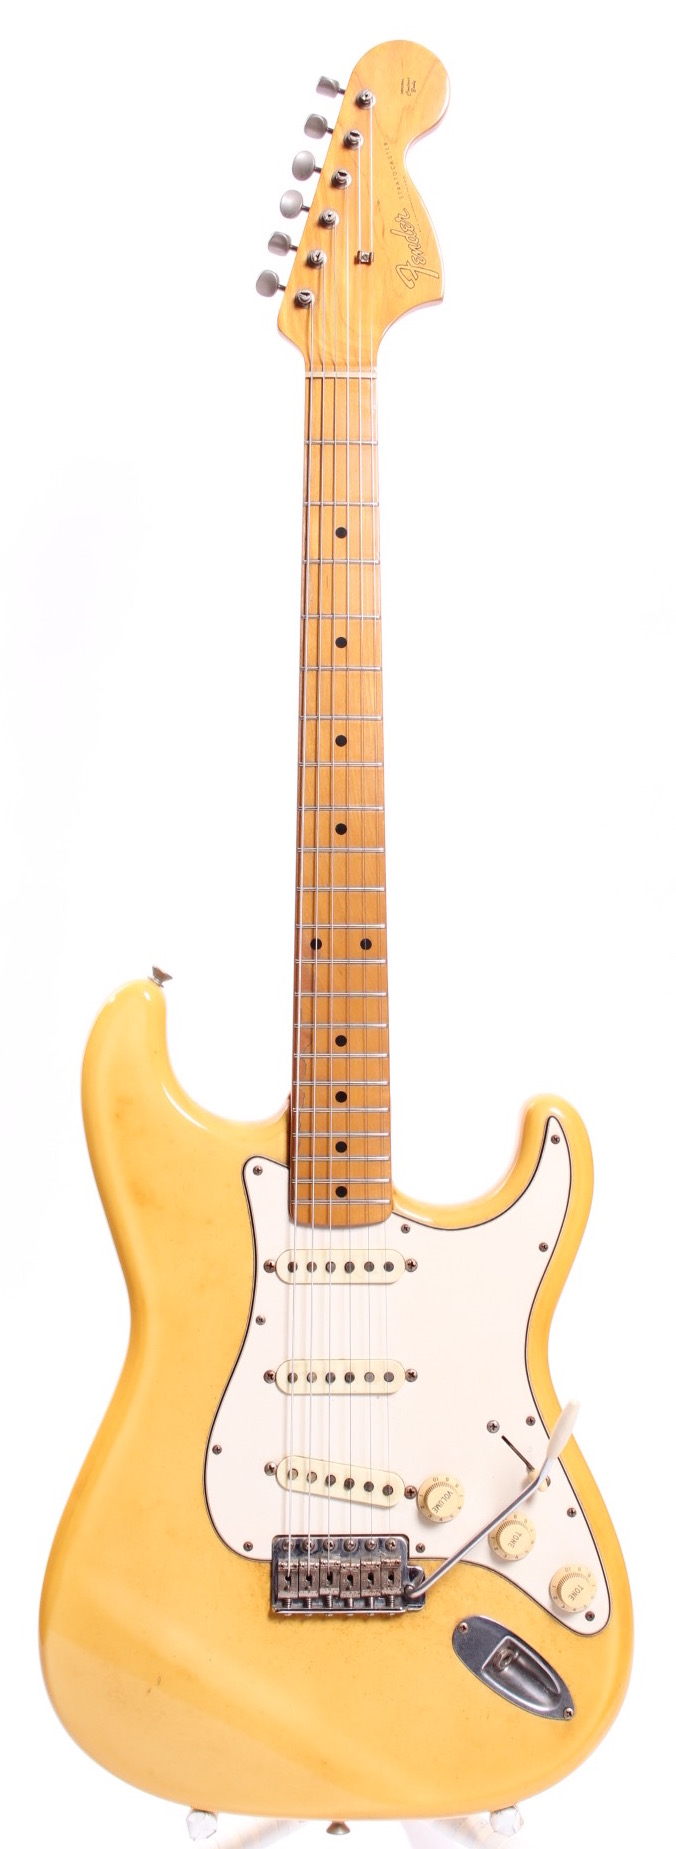 Vintage Fender Stratocaster For Sale 90